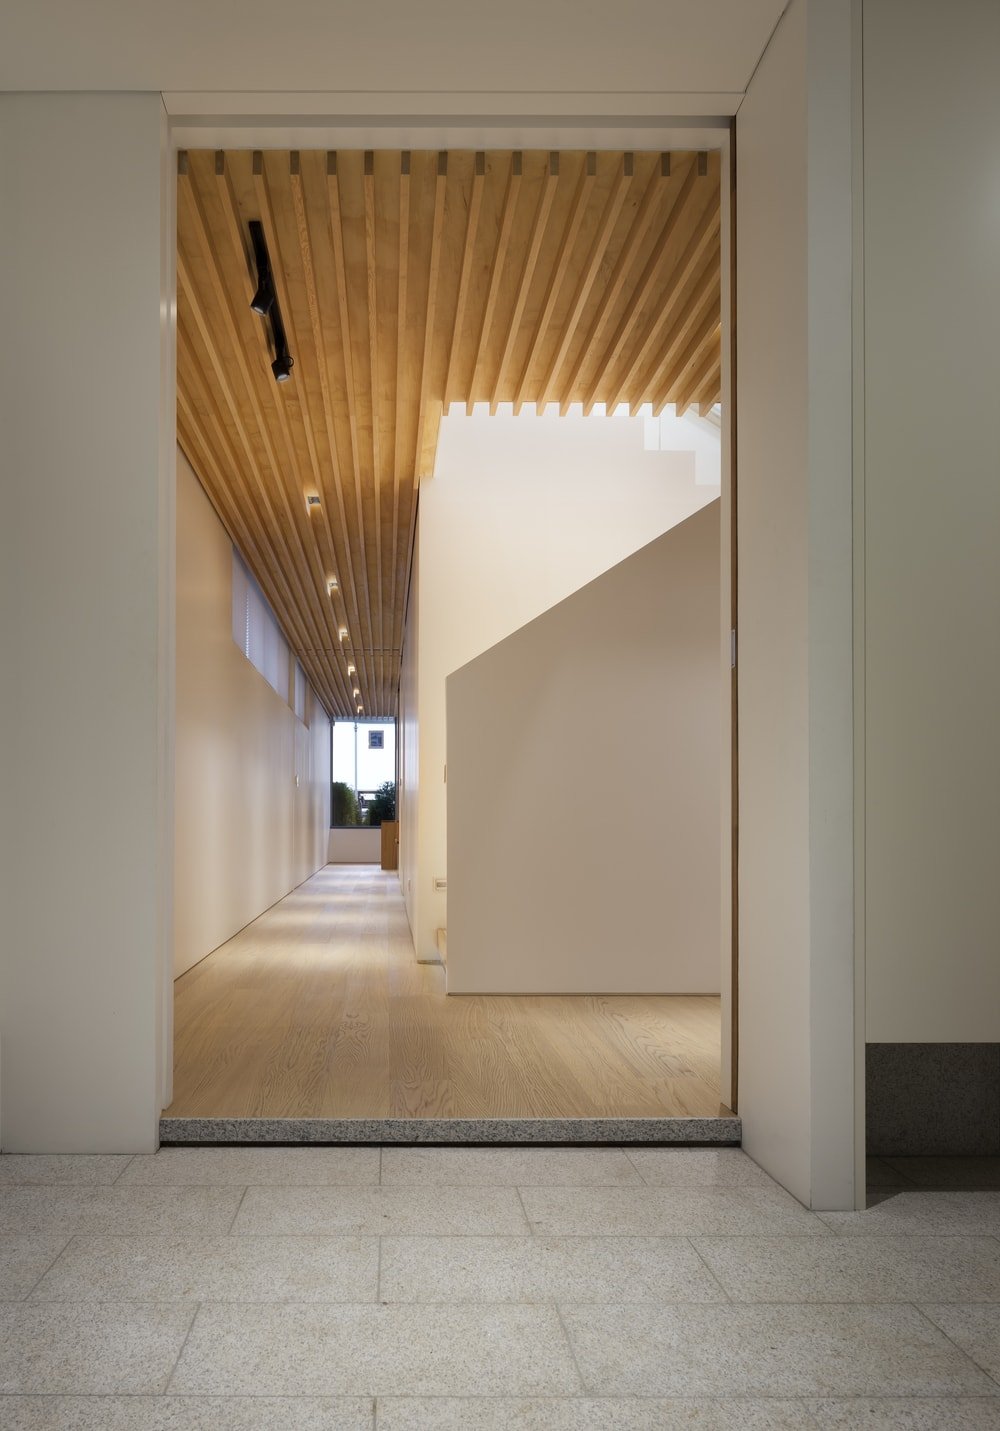 室内景观的特点是木梁天花板和硬木地板上的现代照明。